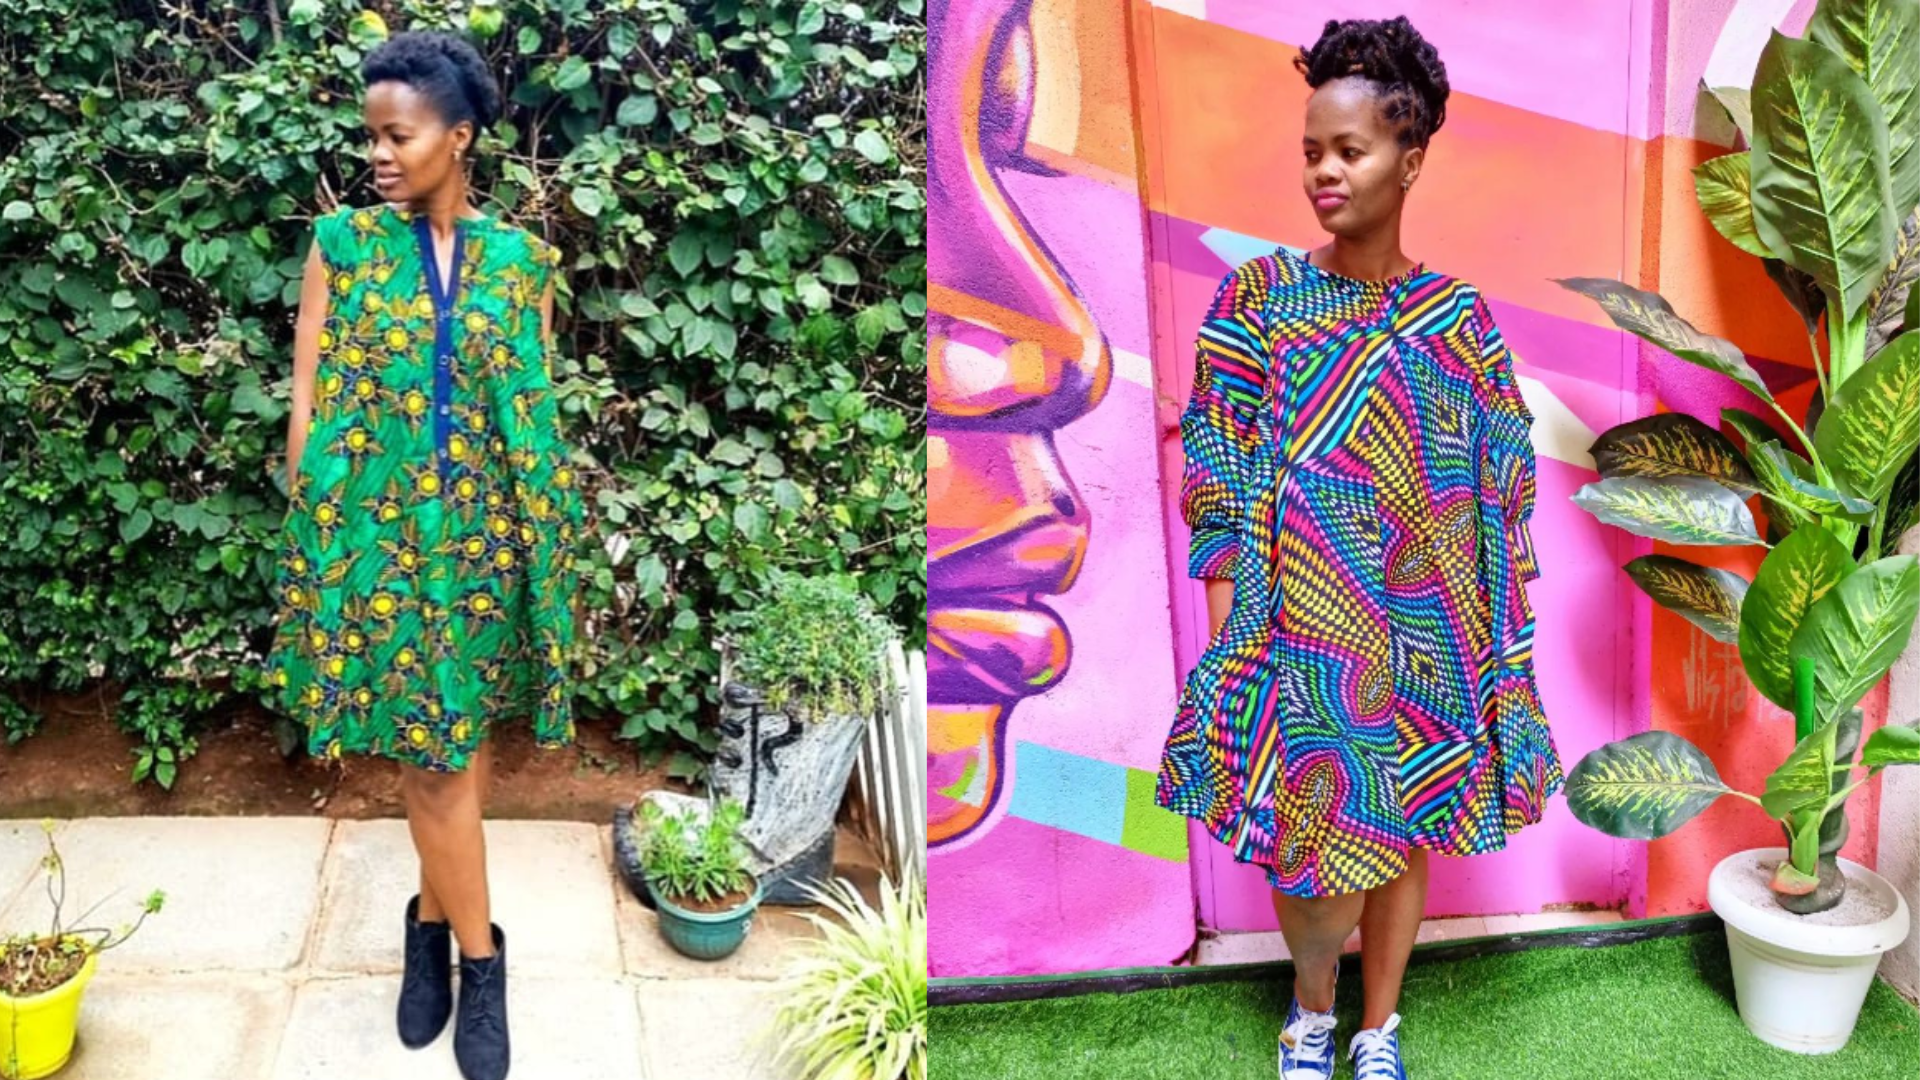 modern short african dresses